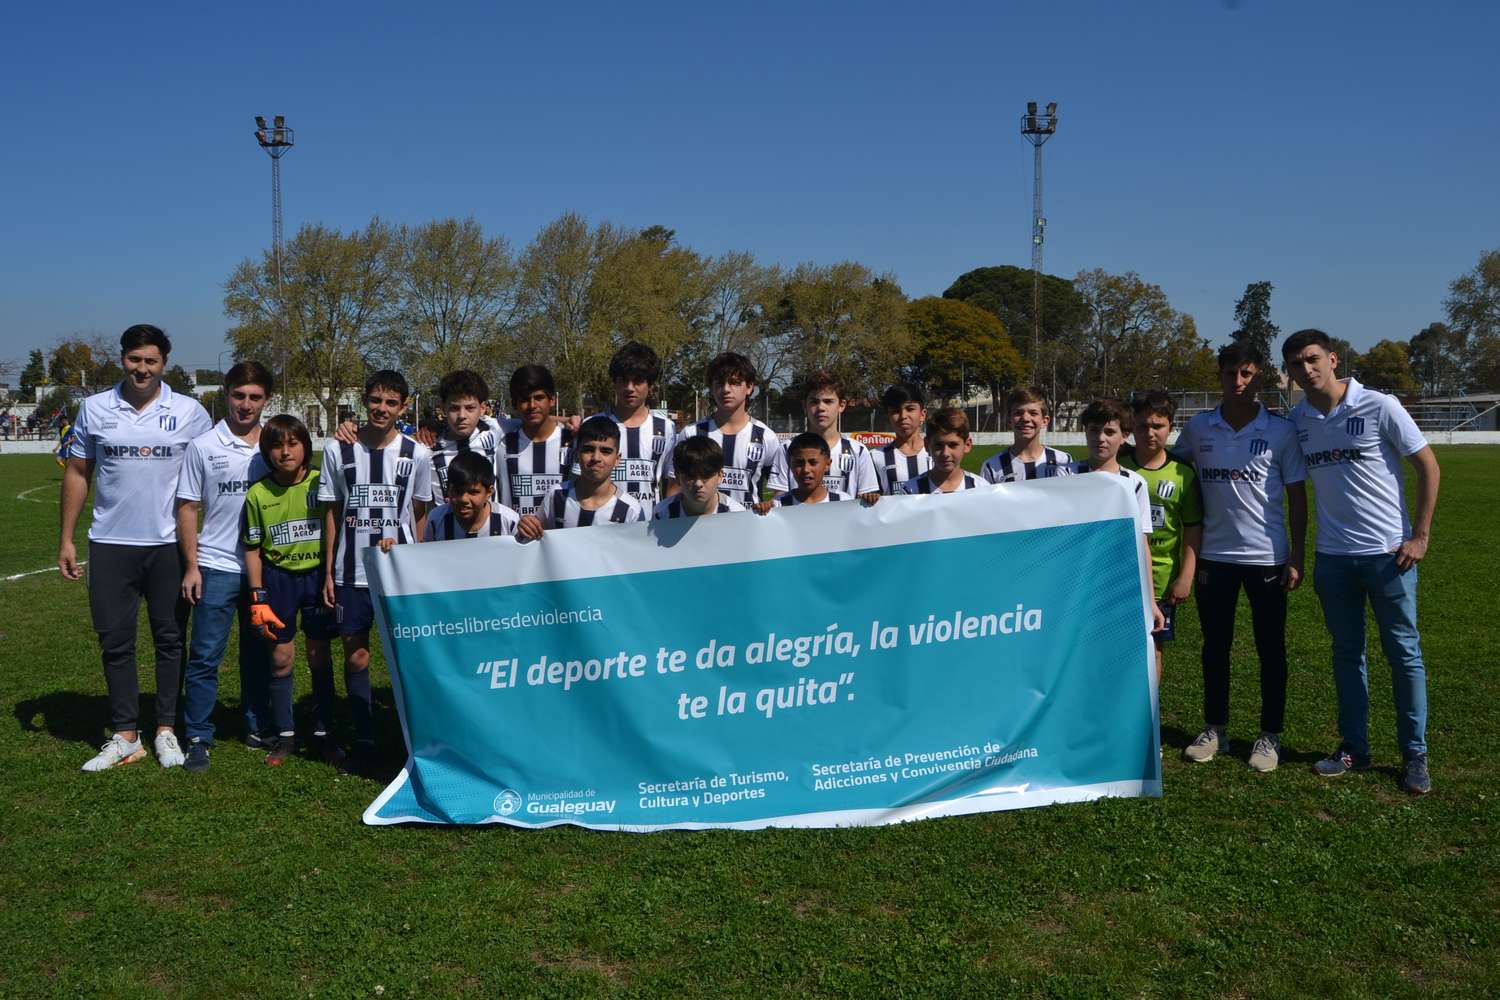 Sociedad Sportiva (Gguay.) 0 – Atl. Gualeguay (Villaguay) 1